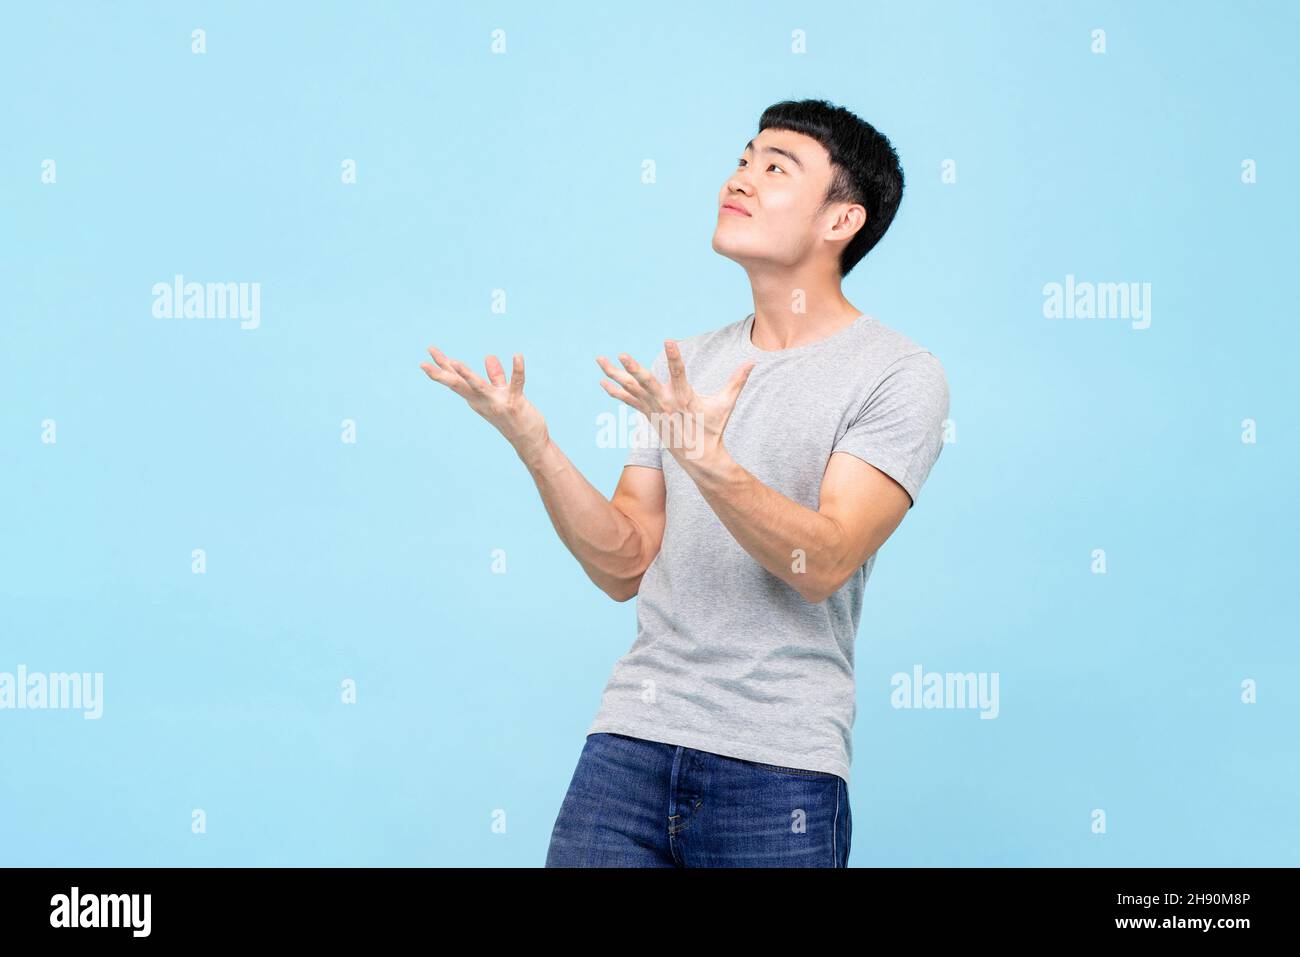 Asiatischer Mann, der mit einem schockierten Gesicht die Hände aufhob und auf einem hellblauen Hintergrund auf leeren Raum über dem Studio schaute Stockfoto